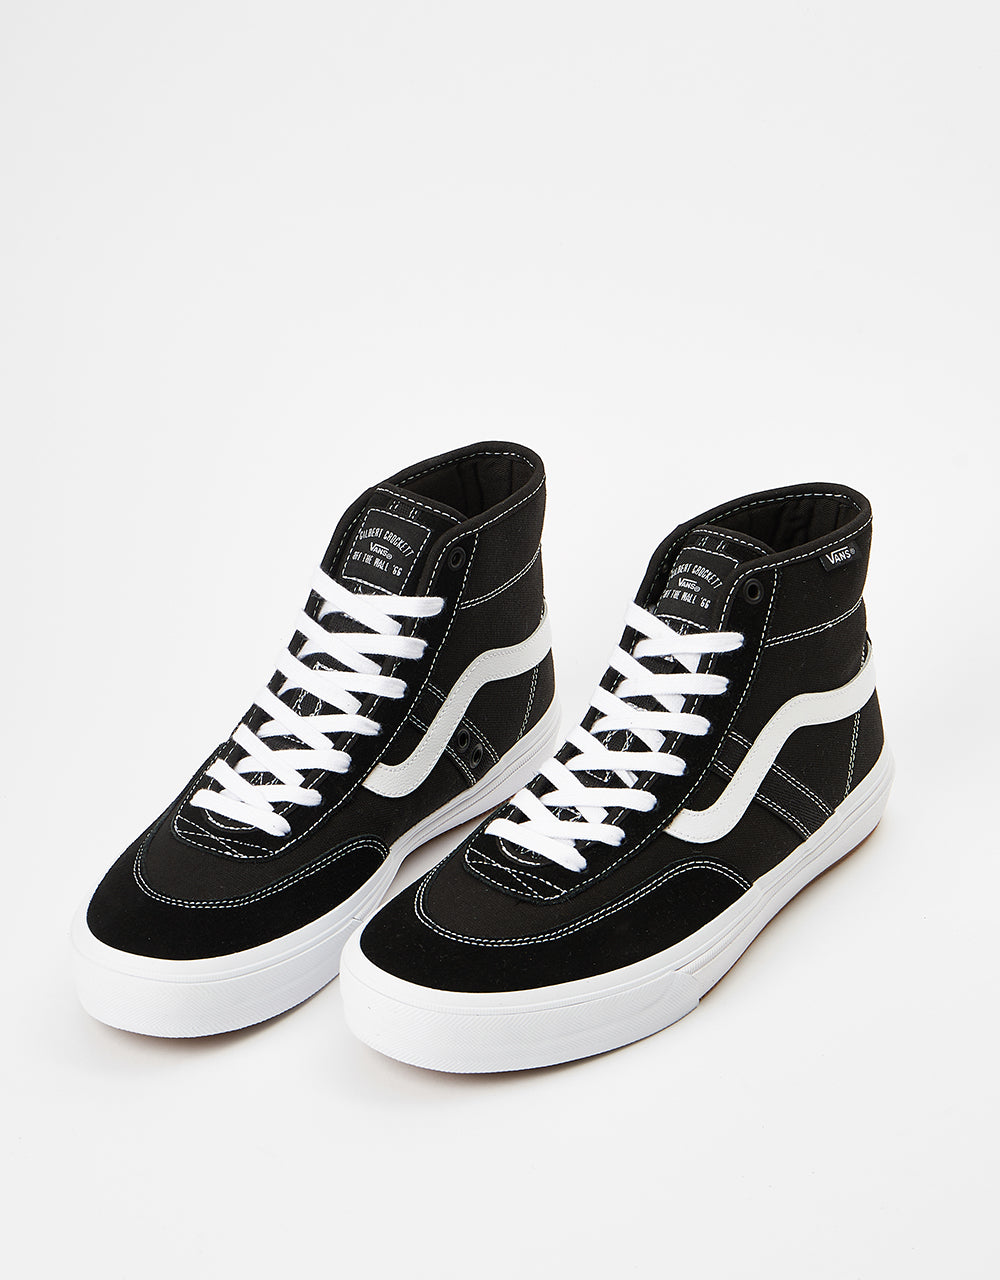 Vans Crockett High Skate Shoes - Black/White